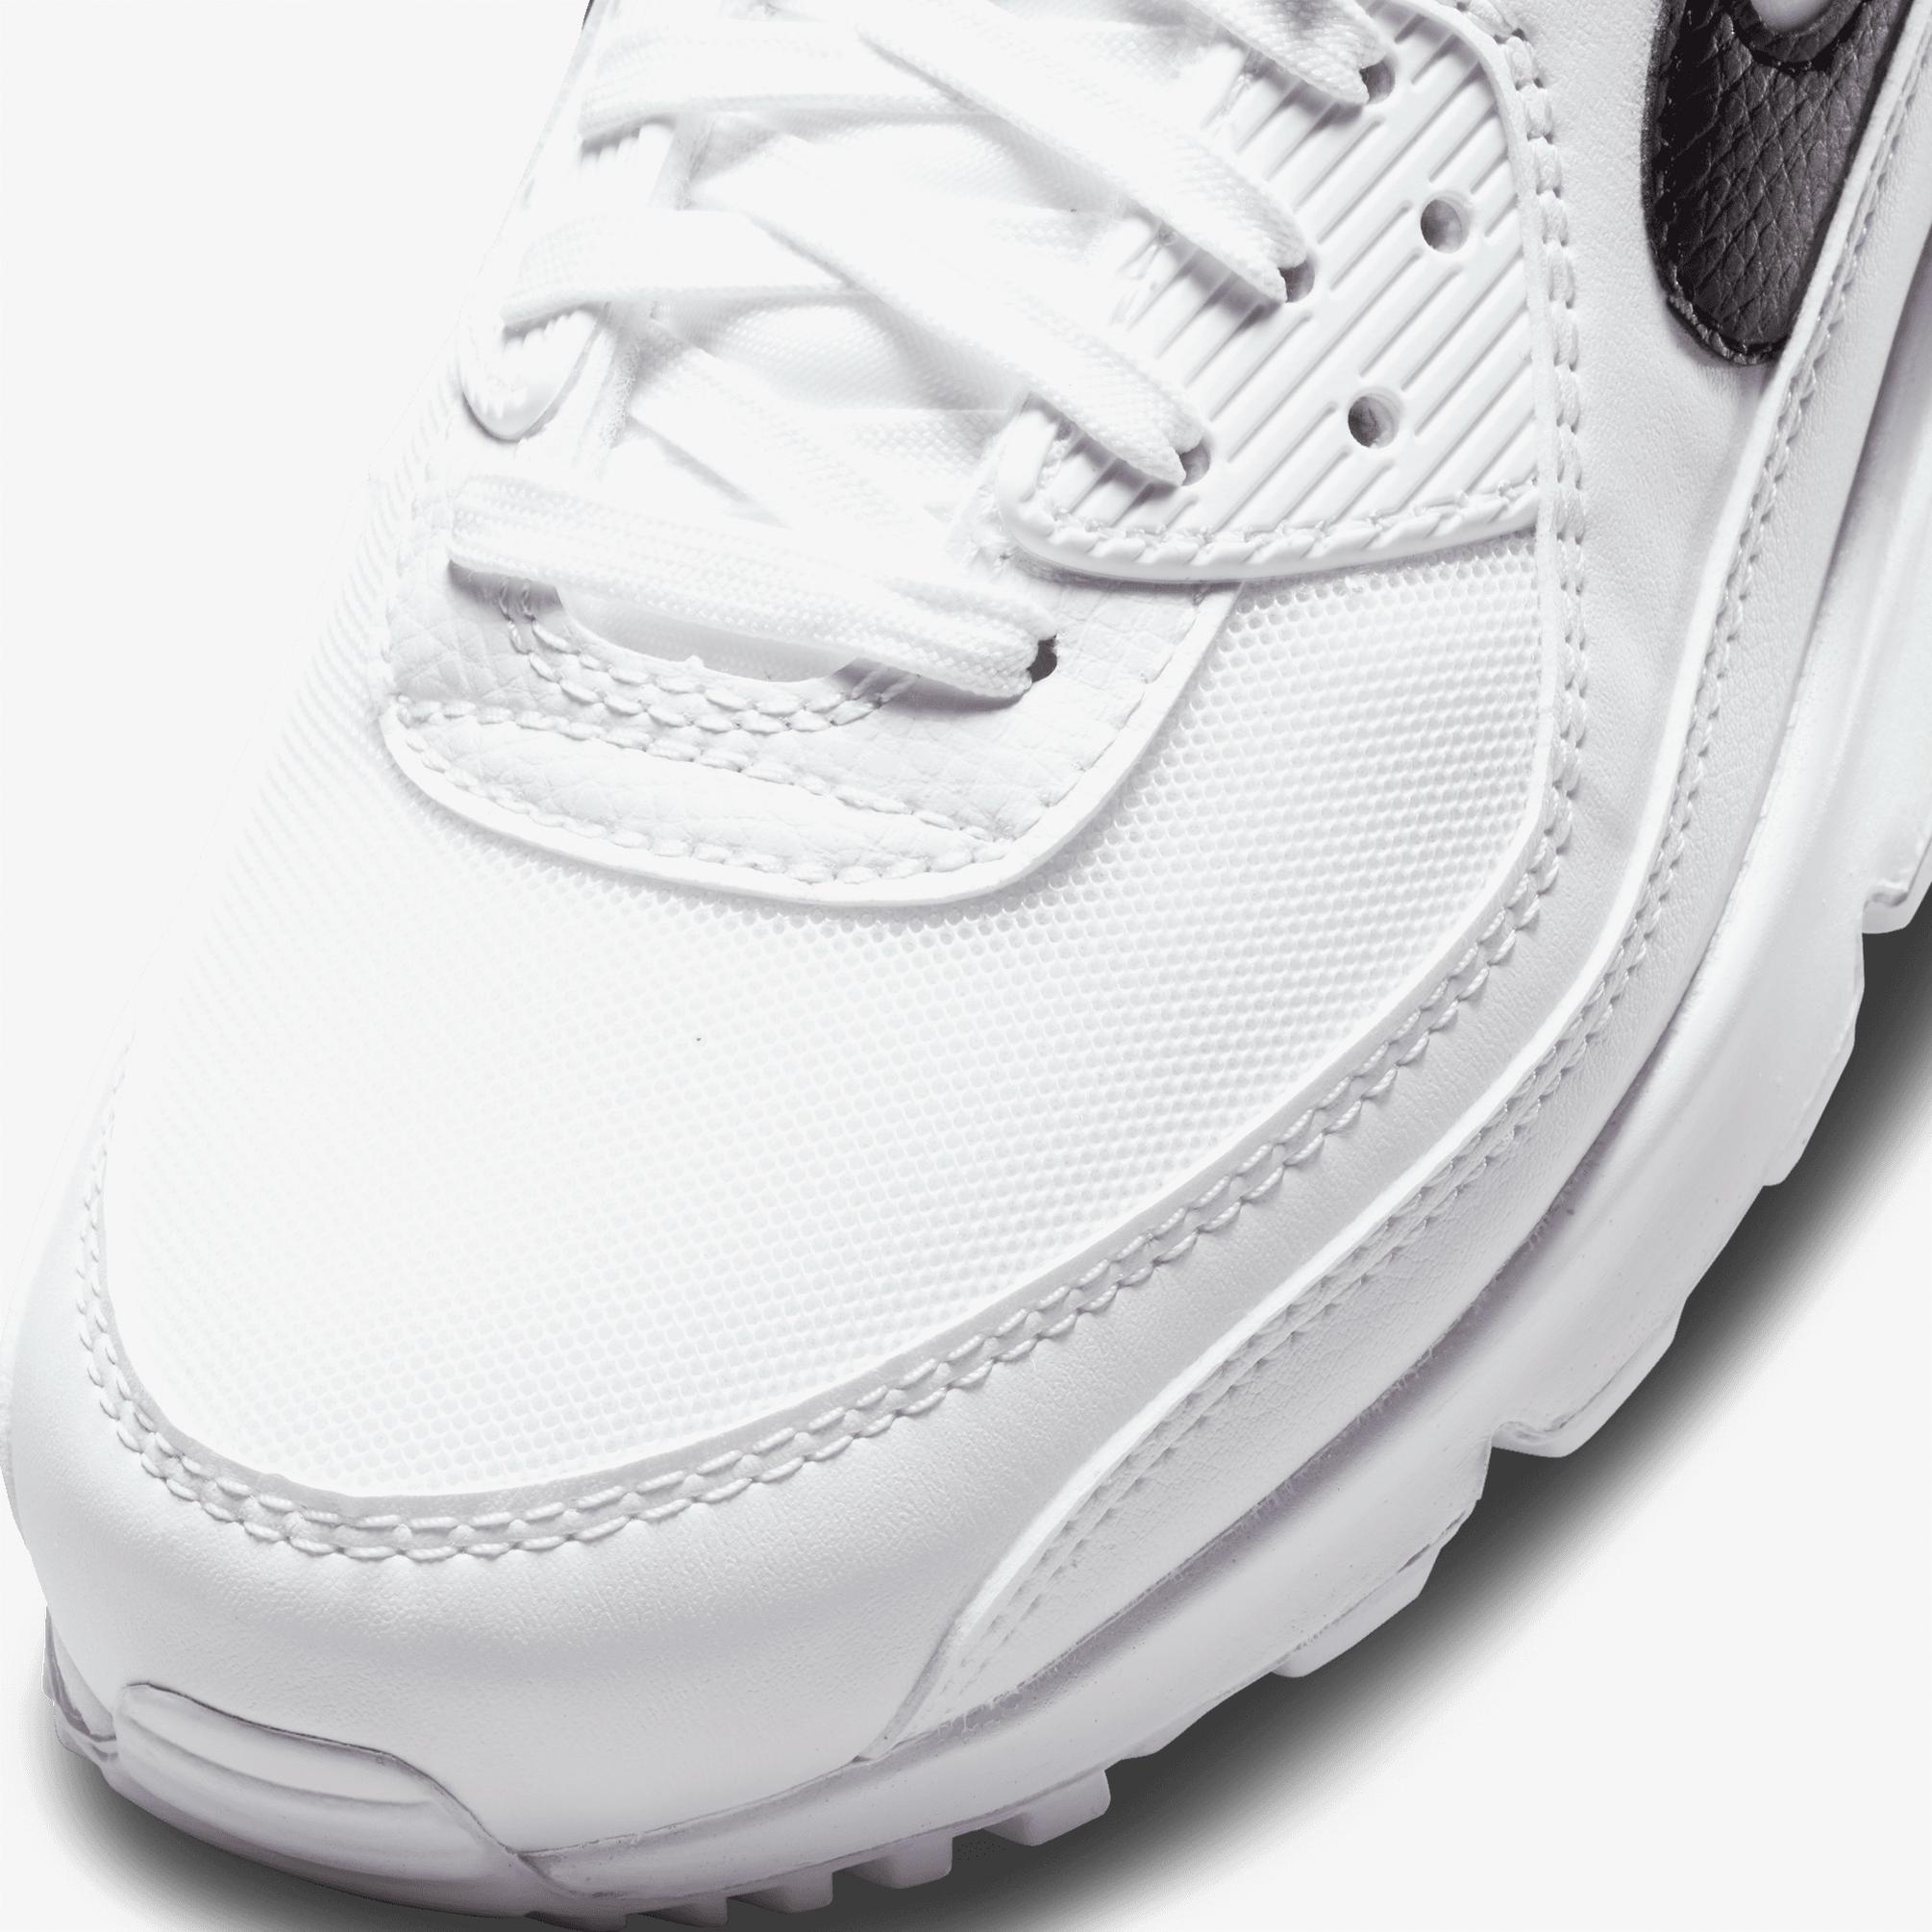  Nike Air Max 90 Kadın Beyaz Spor Ayakkabı